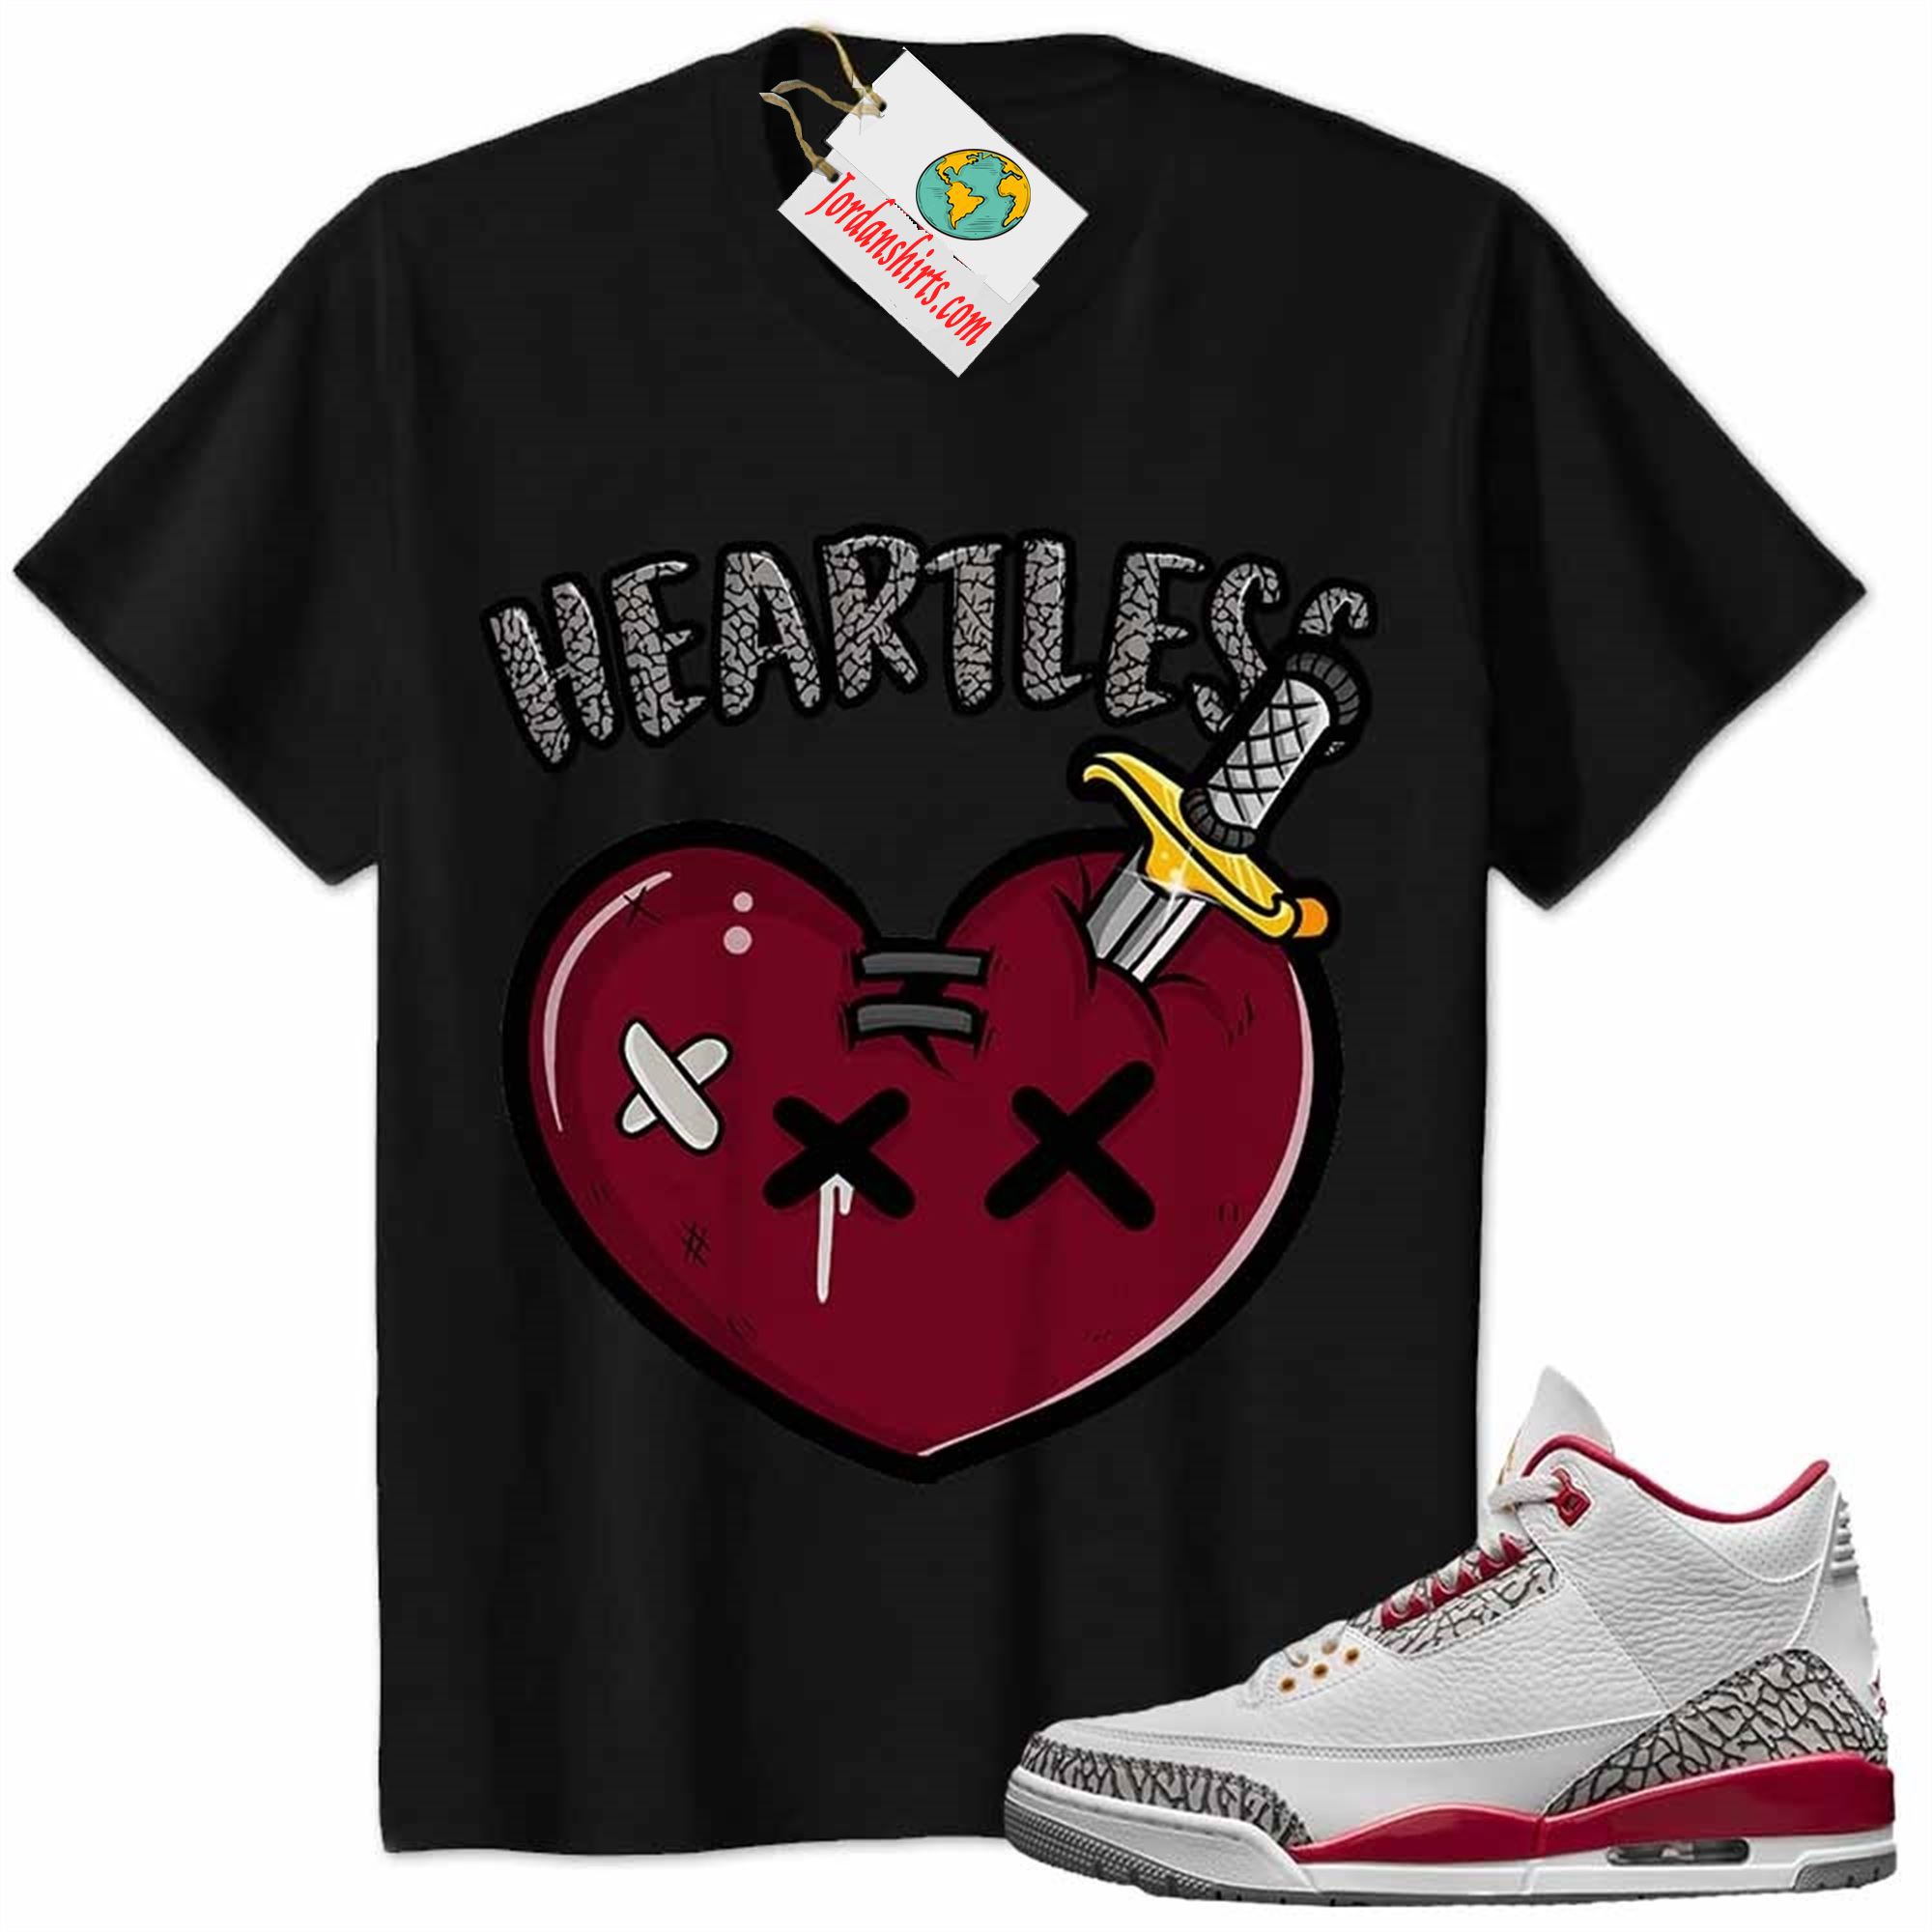 Jordan 3 Shirt, Crying Heart Heartless Black Air Jordan 3 Cardinal Red 3s Size Up To 5xl